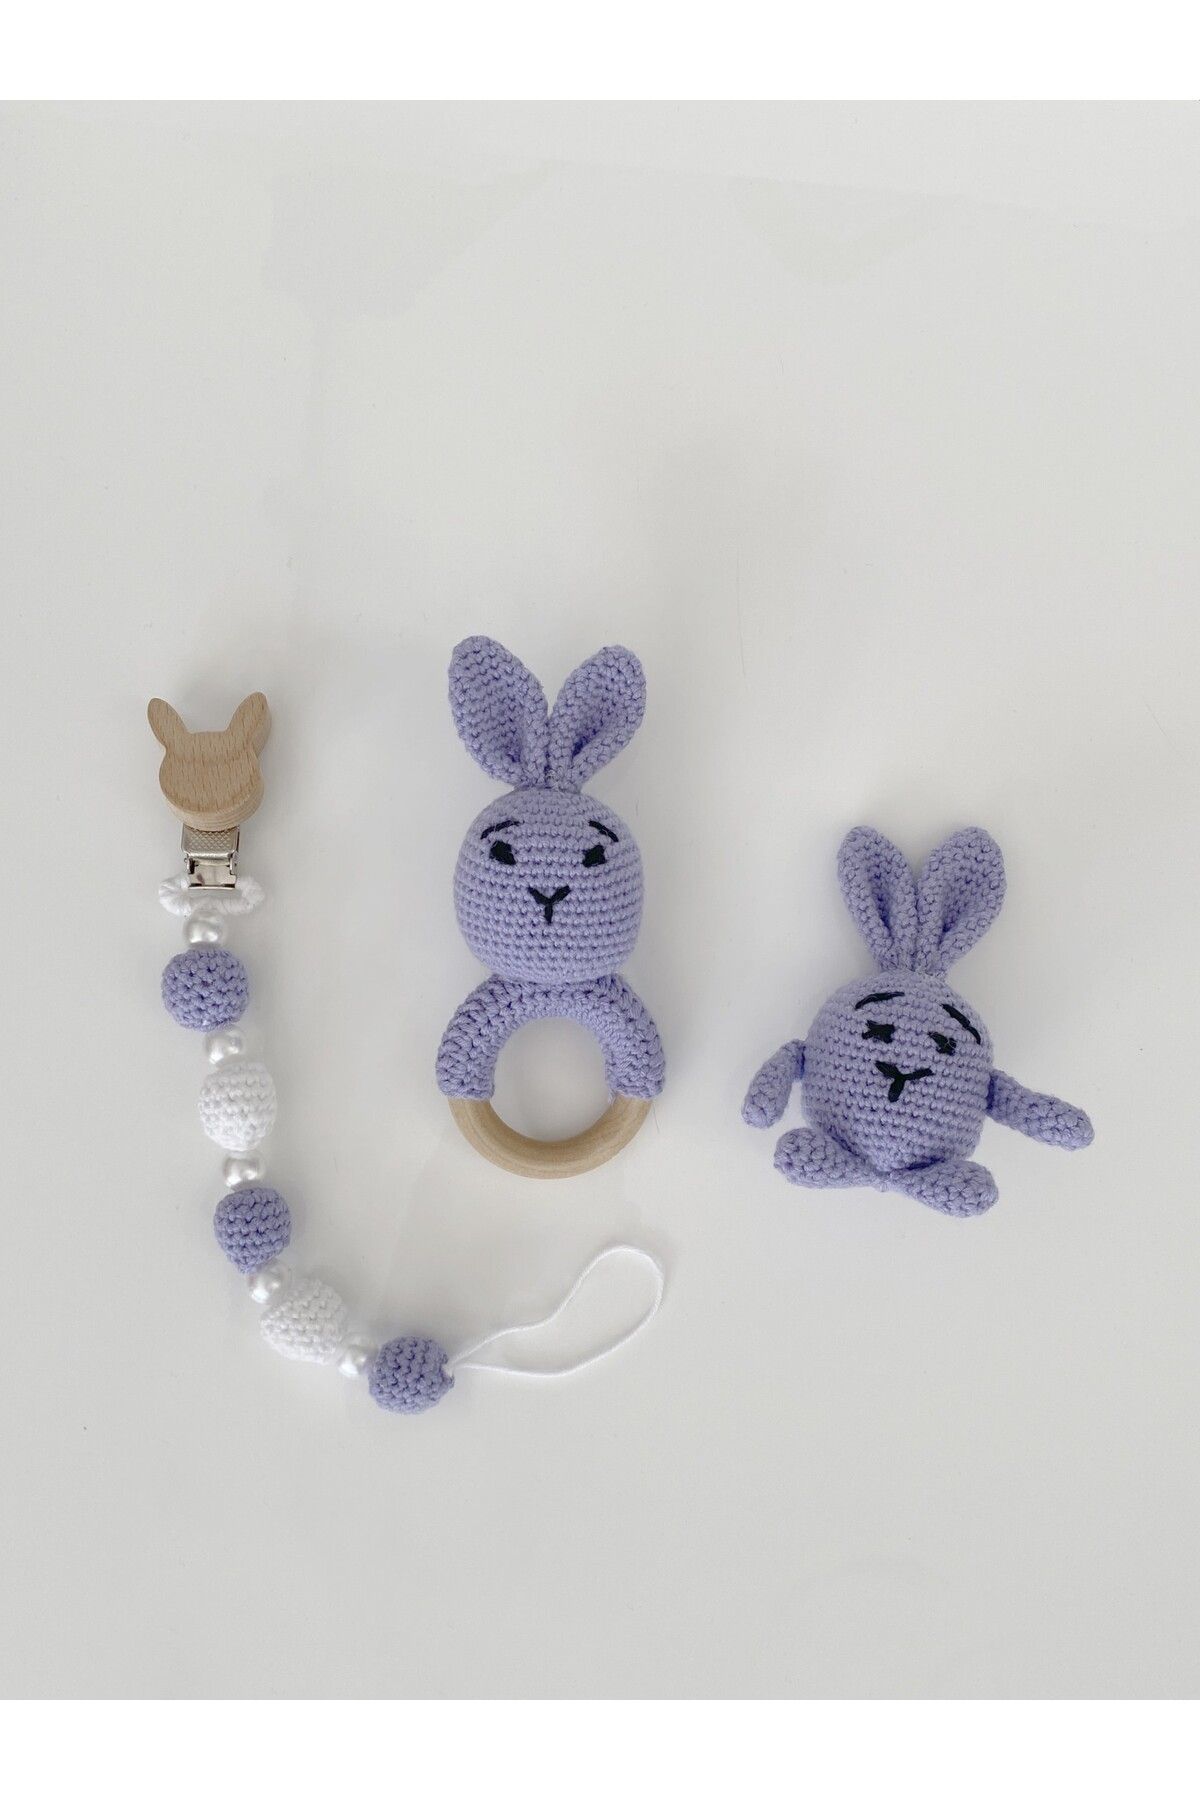 Jaju Baby Mor Renk Tavşan Set Amigurumi Oyuncak Çıngırak ve Emzik Zinciri Üçlü Set